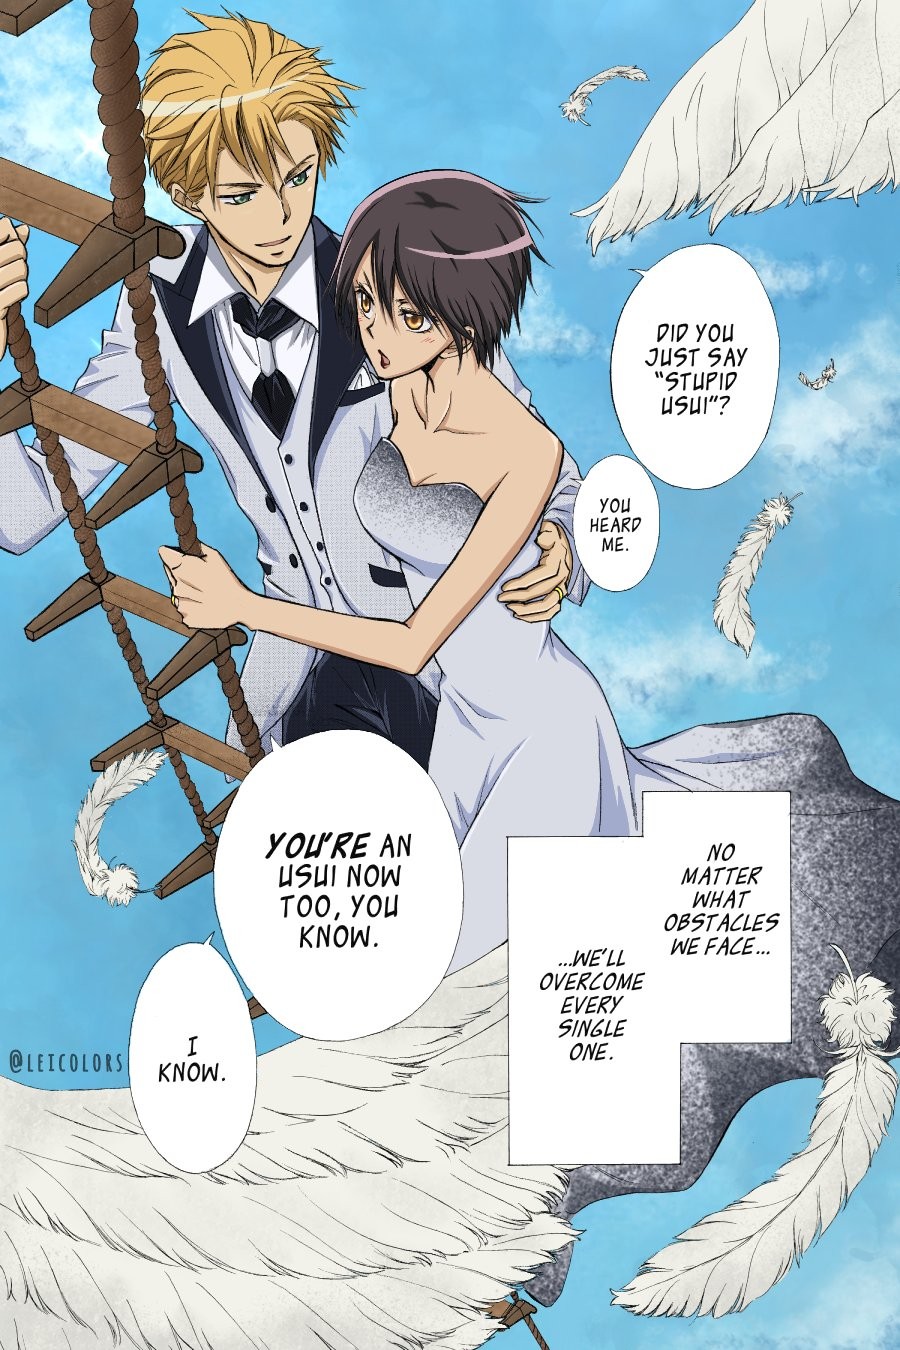 Apa akhir dari maid-sama? Apa yang terjadi setelah anime?